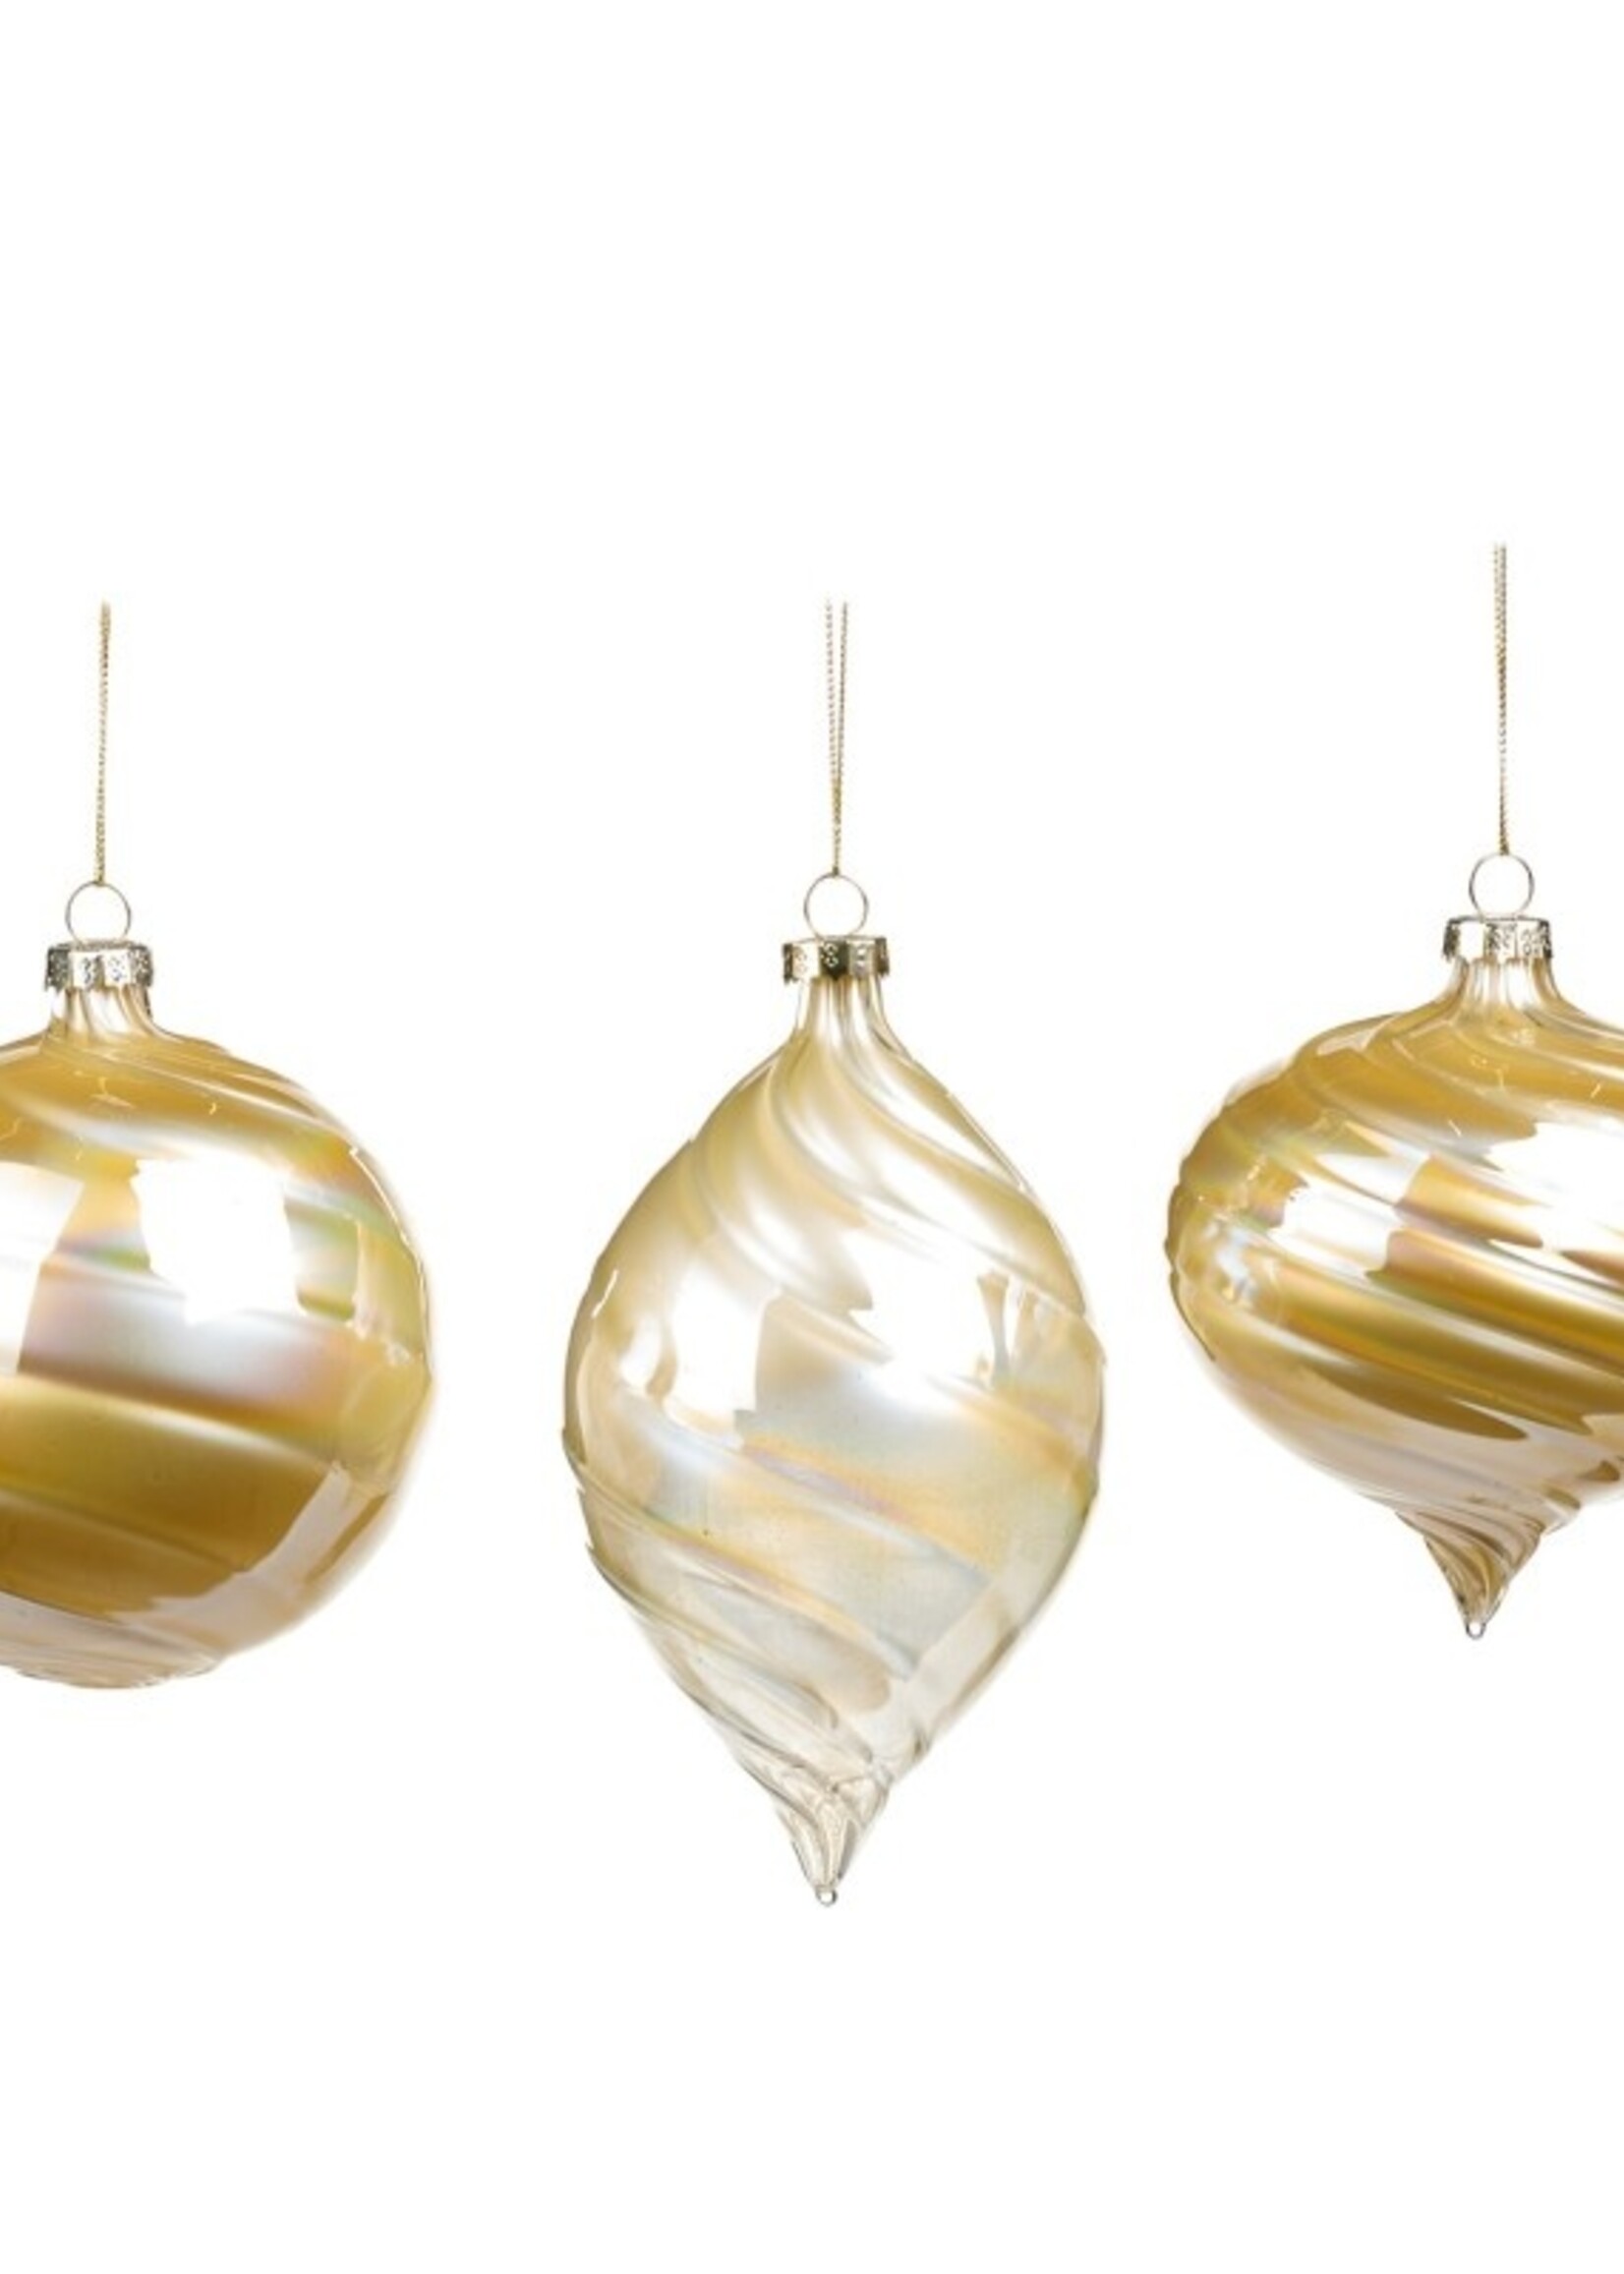 Goodwill M & G Swirl Glass Ornament Kegelvorm